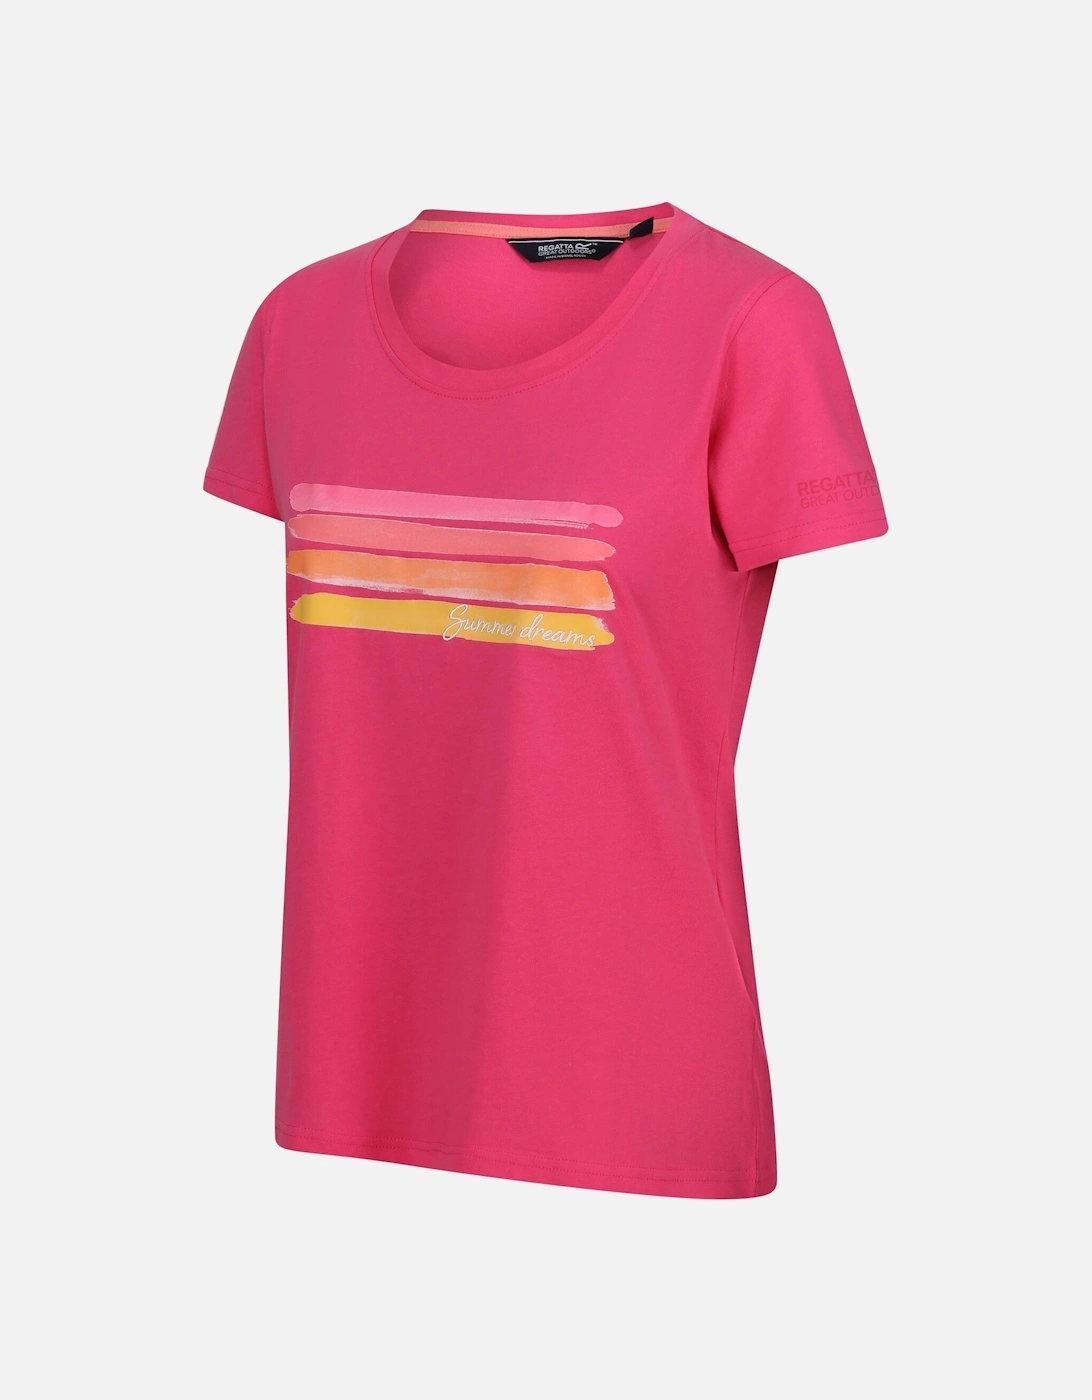 Womens/Ladies Filandra VIII T-Shirt